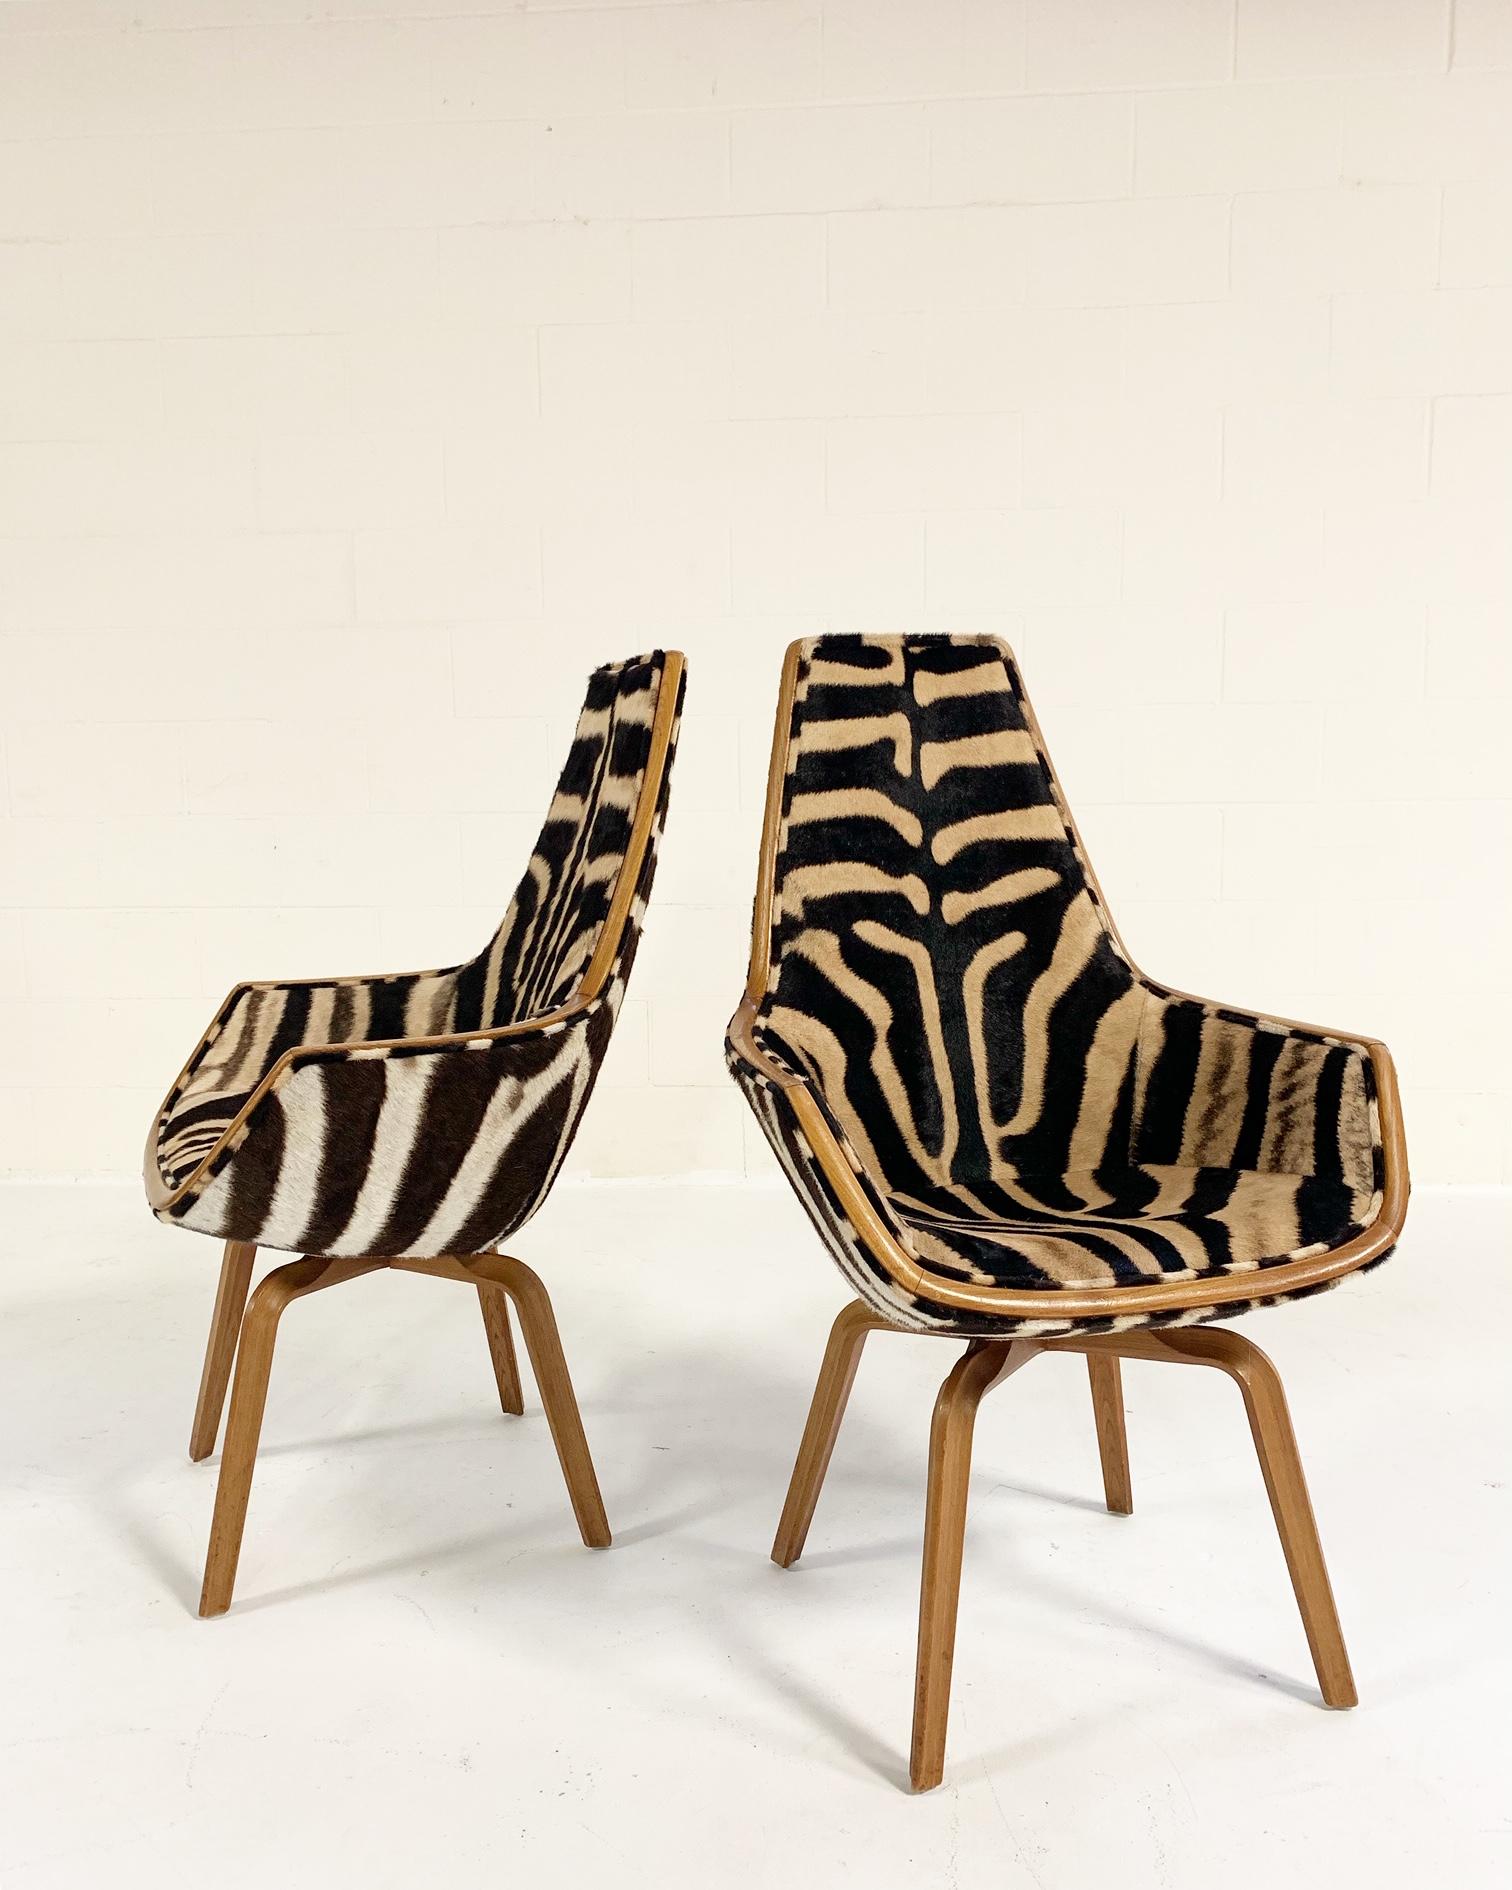 Rare Arne Jacobsen for Fritz Hansen Giraffe Chairs Restored in Zebra Hide, Pair 4